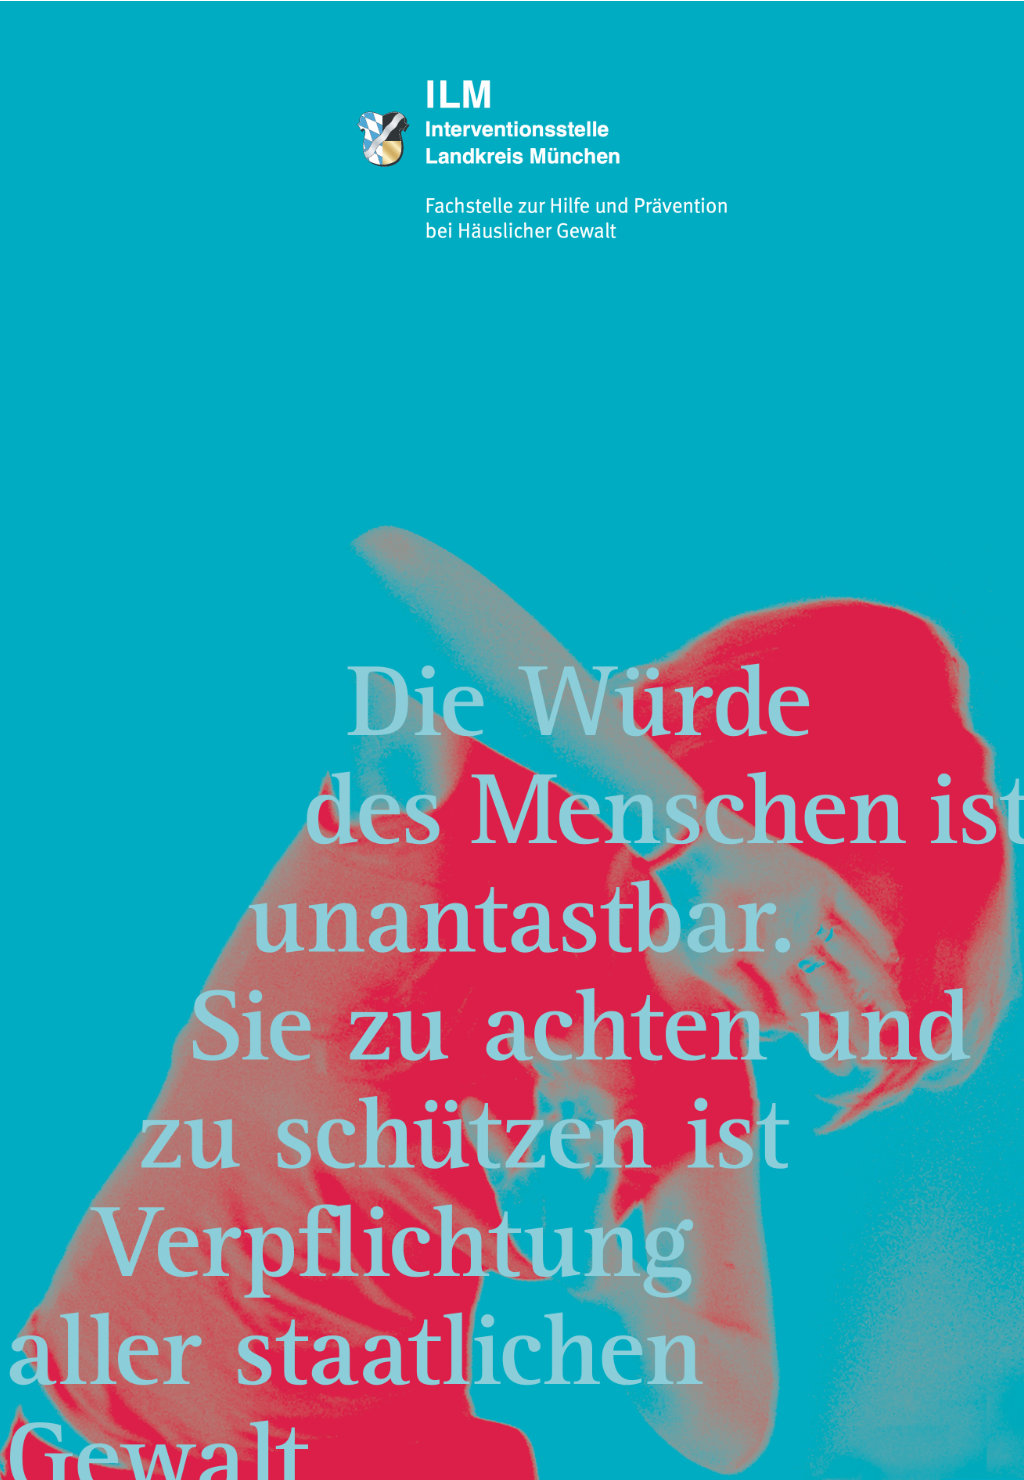 Plakat für die Interventionsstelle Landkreis München